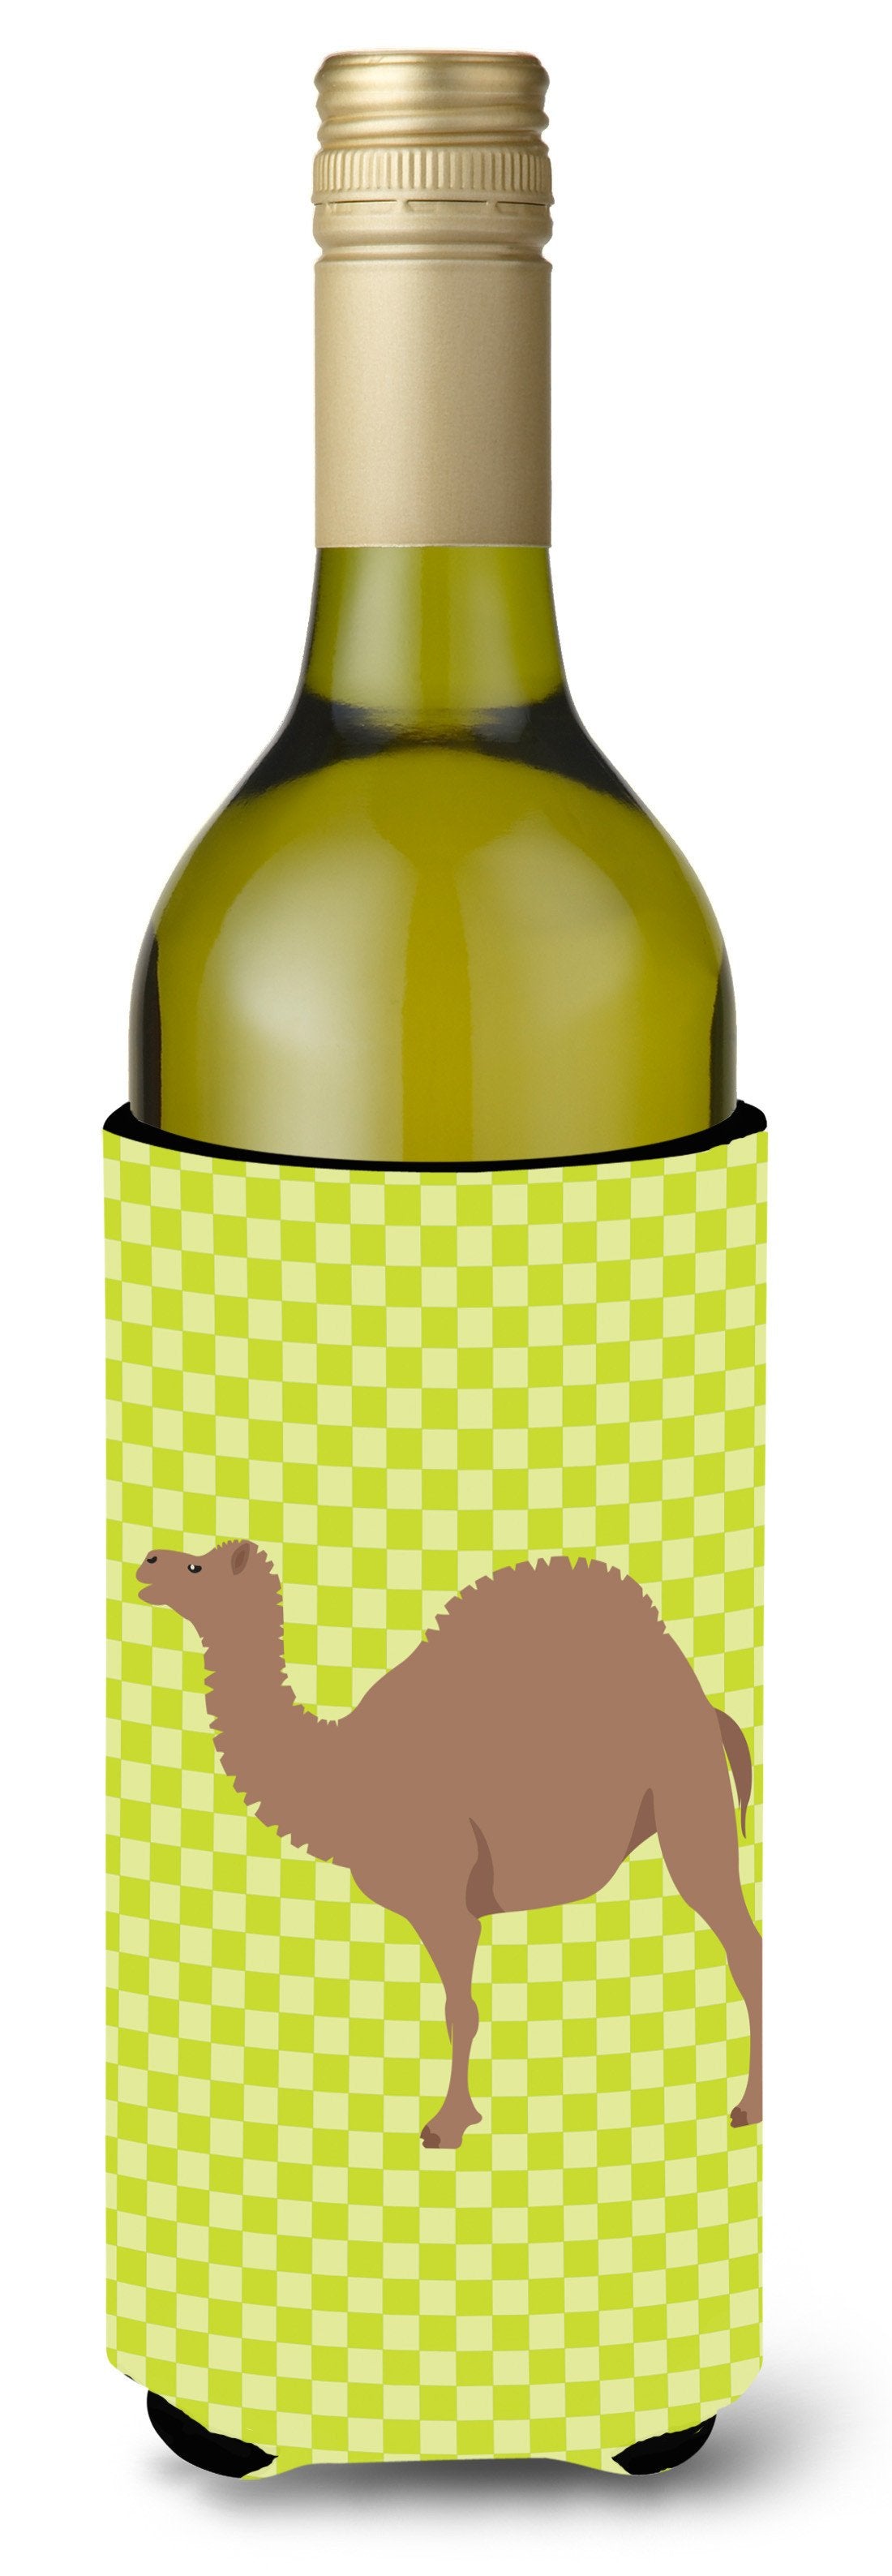 F1 Hybrid Camel Green Wine Bottle Beverge Insulator Hugger BB7645LITERK by Caroline's Treasures